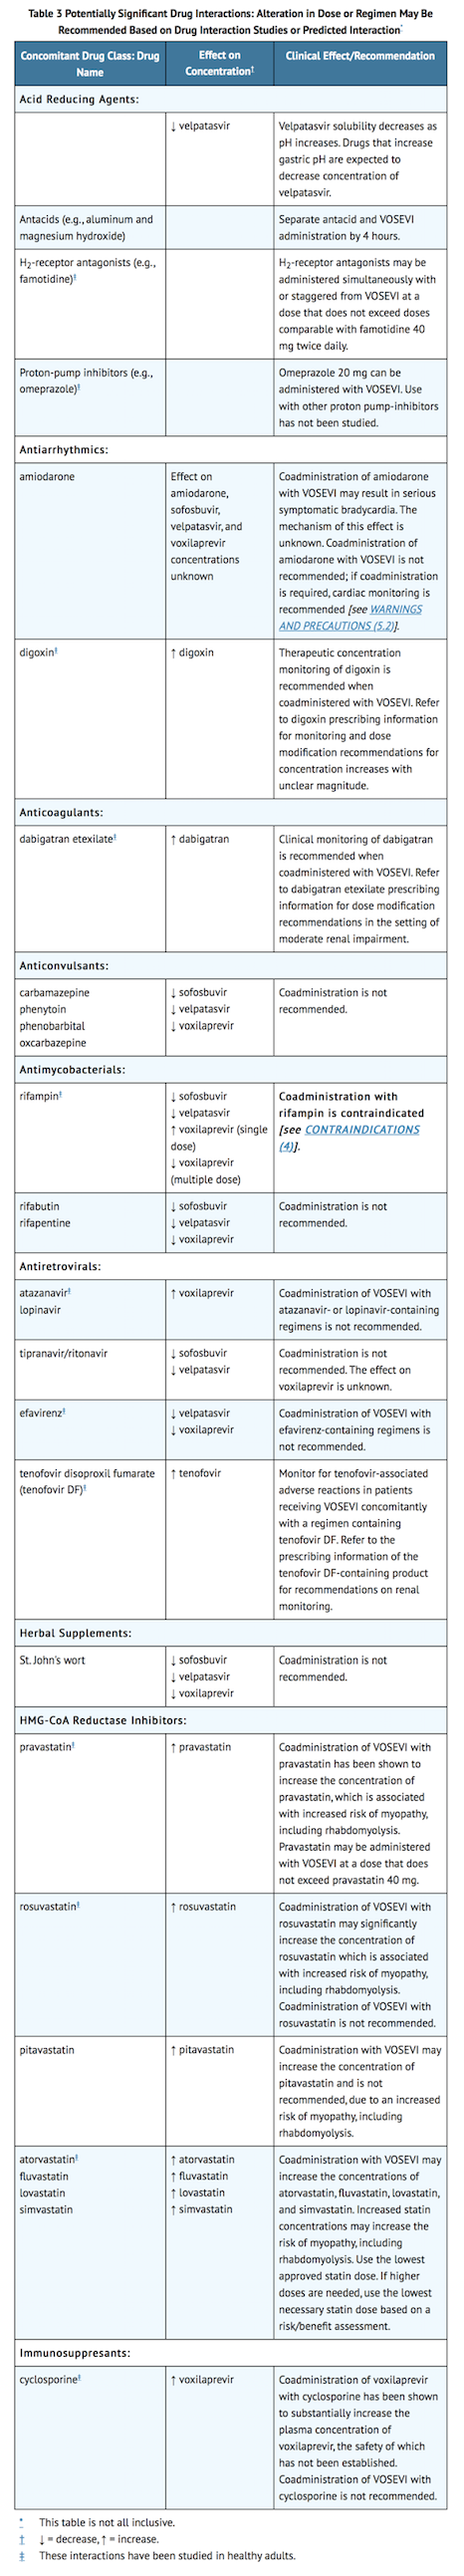 File:Sofosbuvir-velpatasvir-voxilaprevir Drug Interactions Table.png